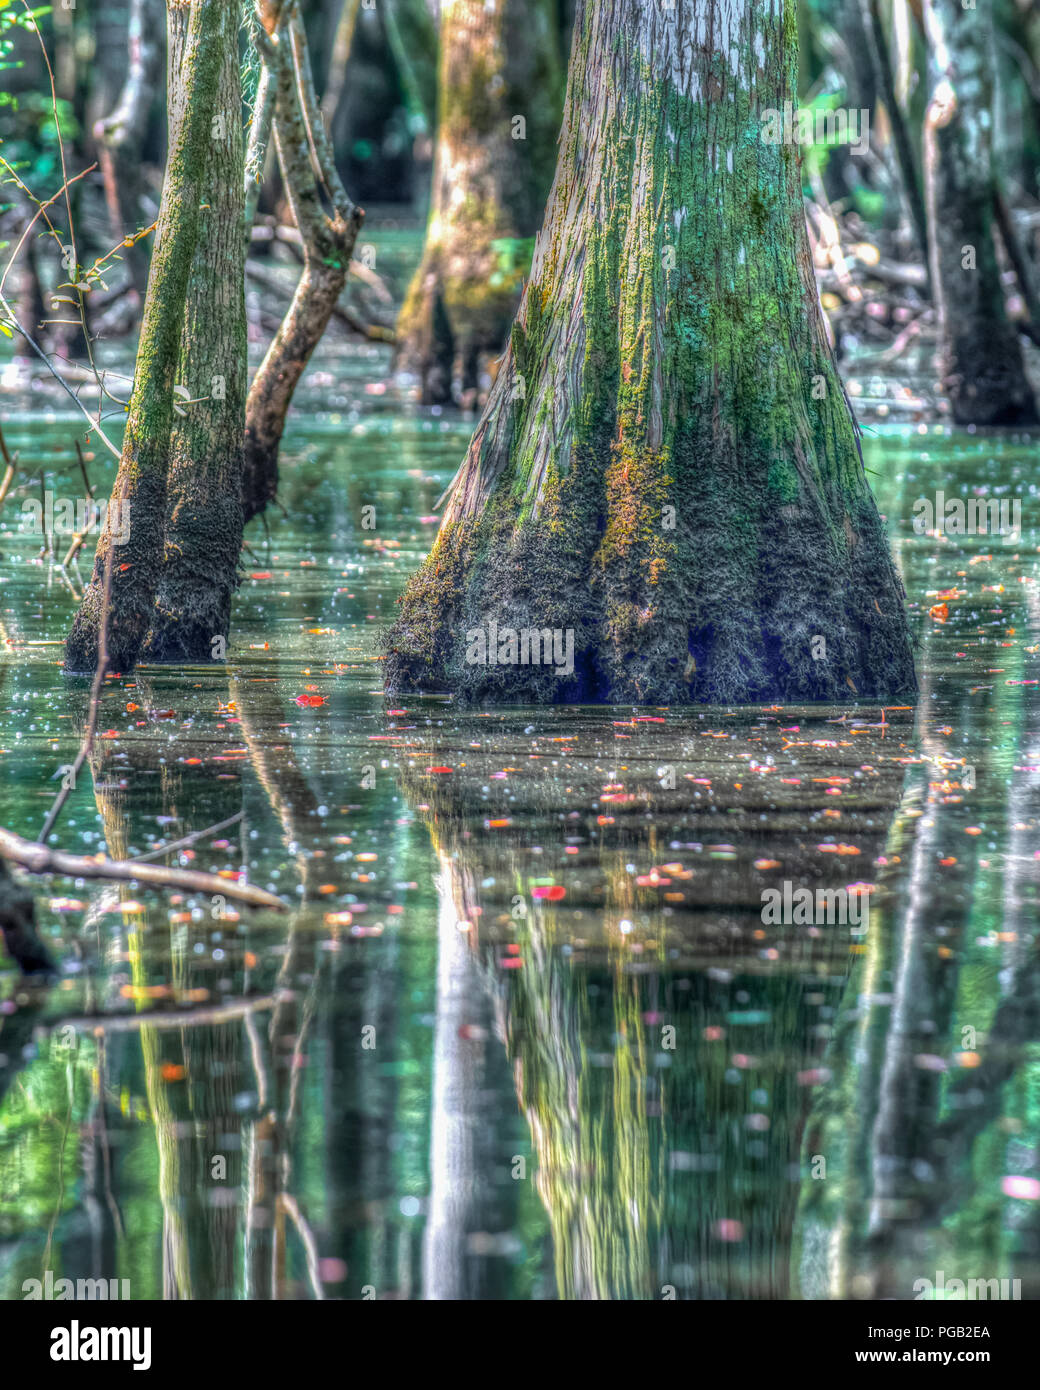 Schöne Kahle Zypressen Sumpf in North Carolina Usa - Baum Reflexion in ruhigen Brackwasser - shalotte Fluss Stockfoto